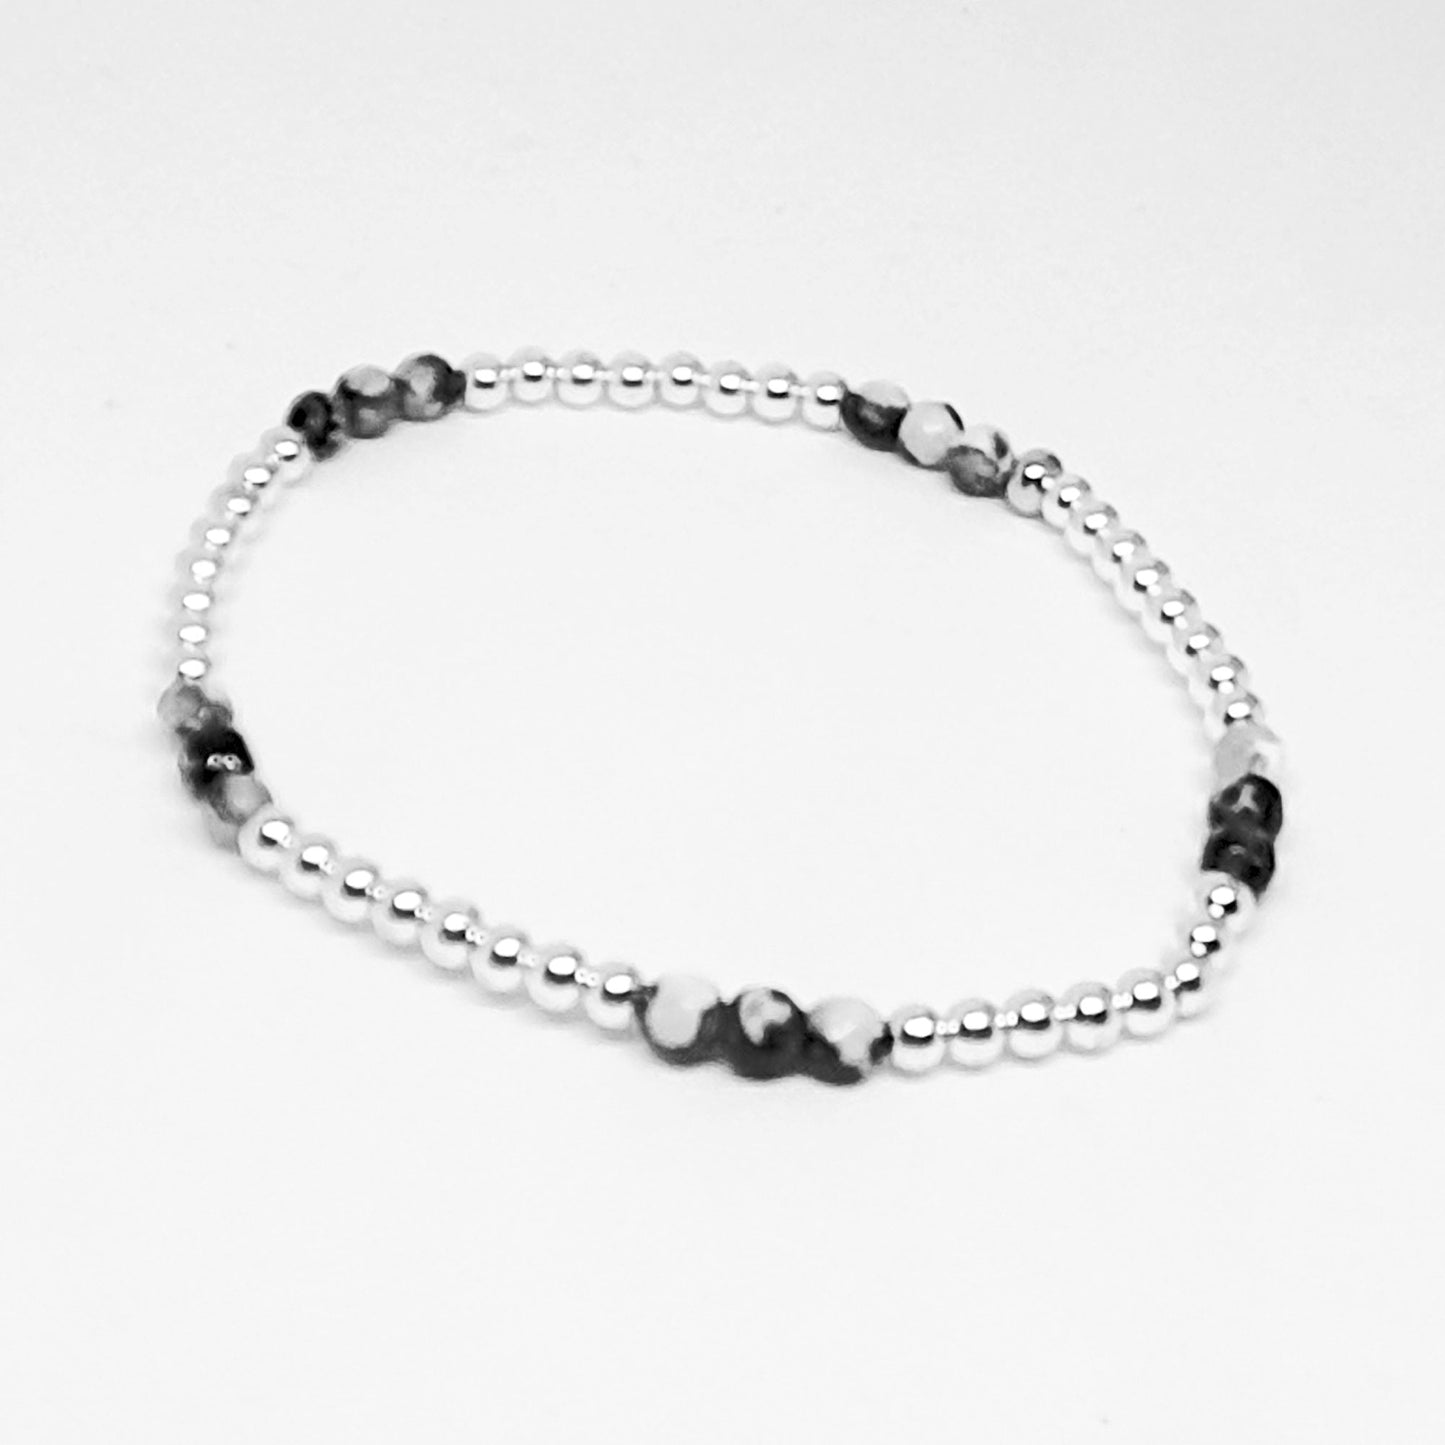 Black & white agate inset bracelet